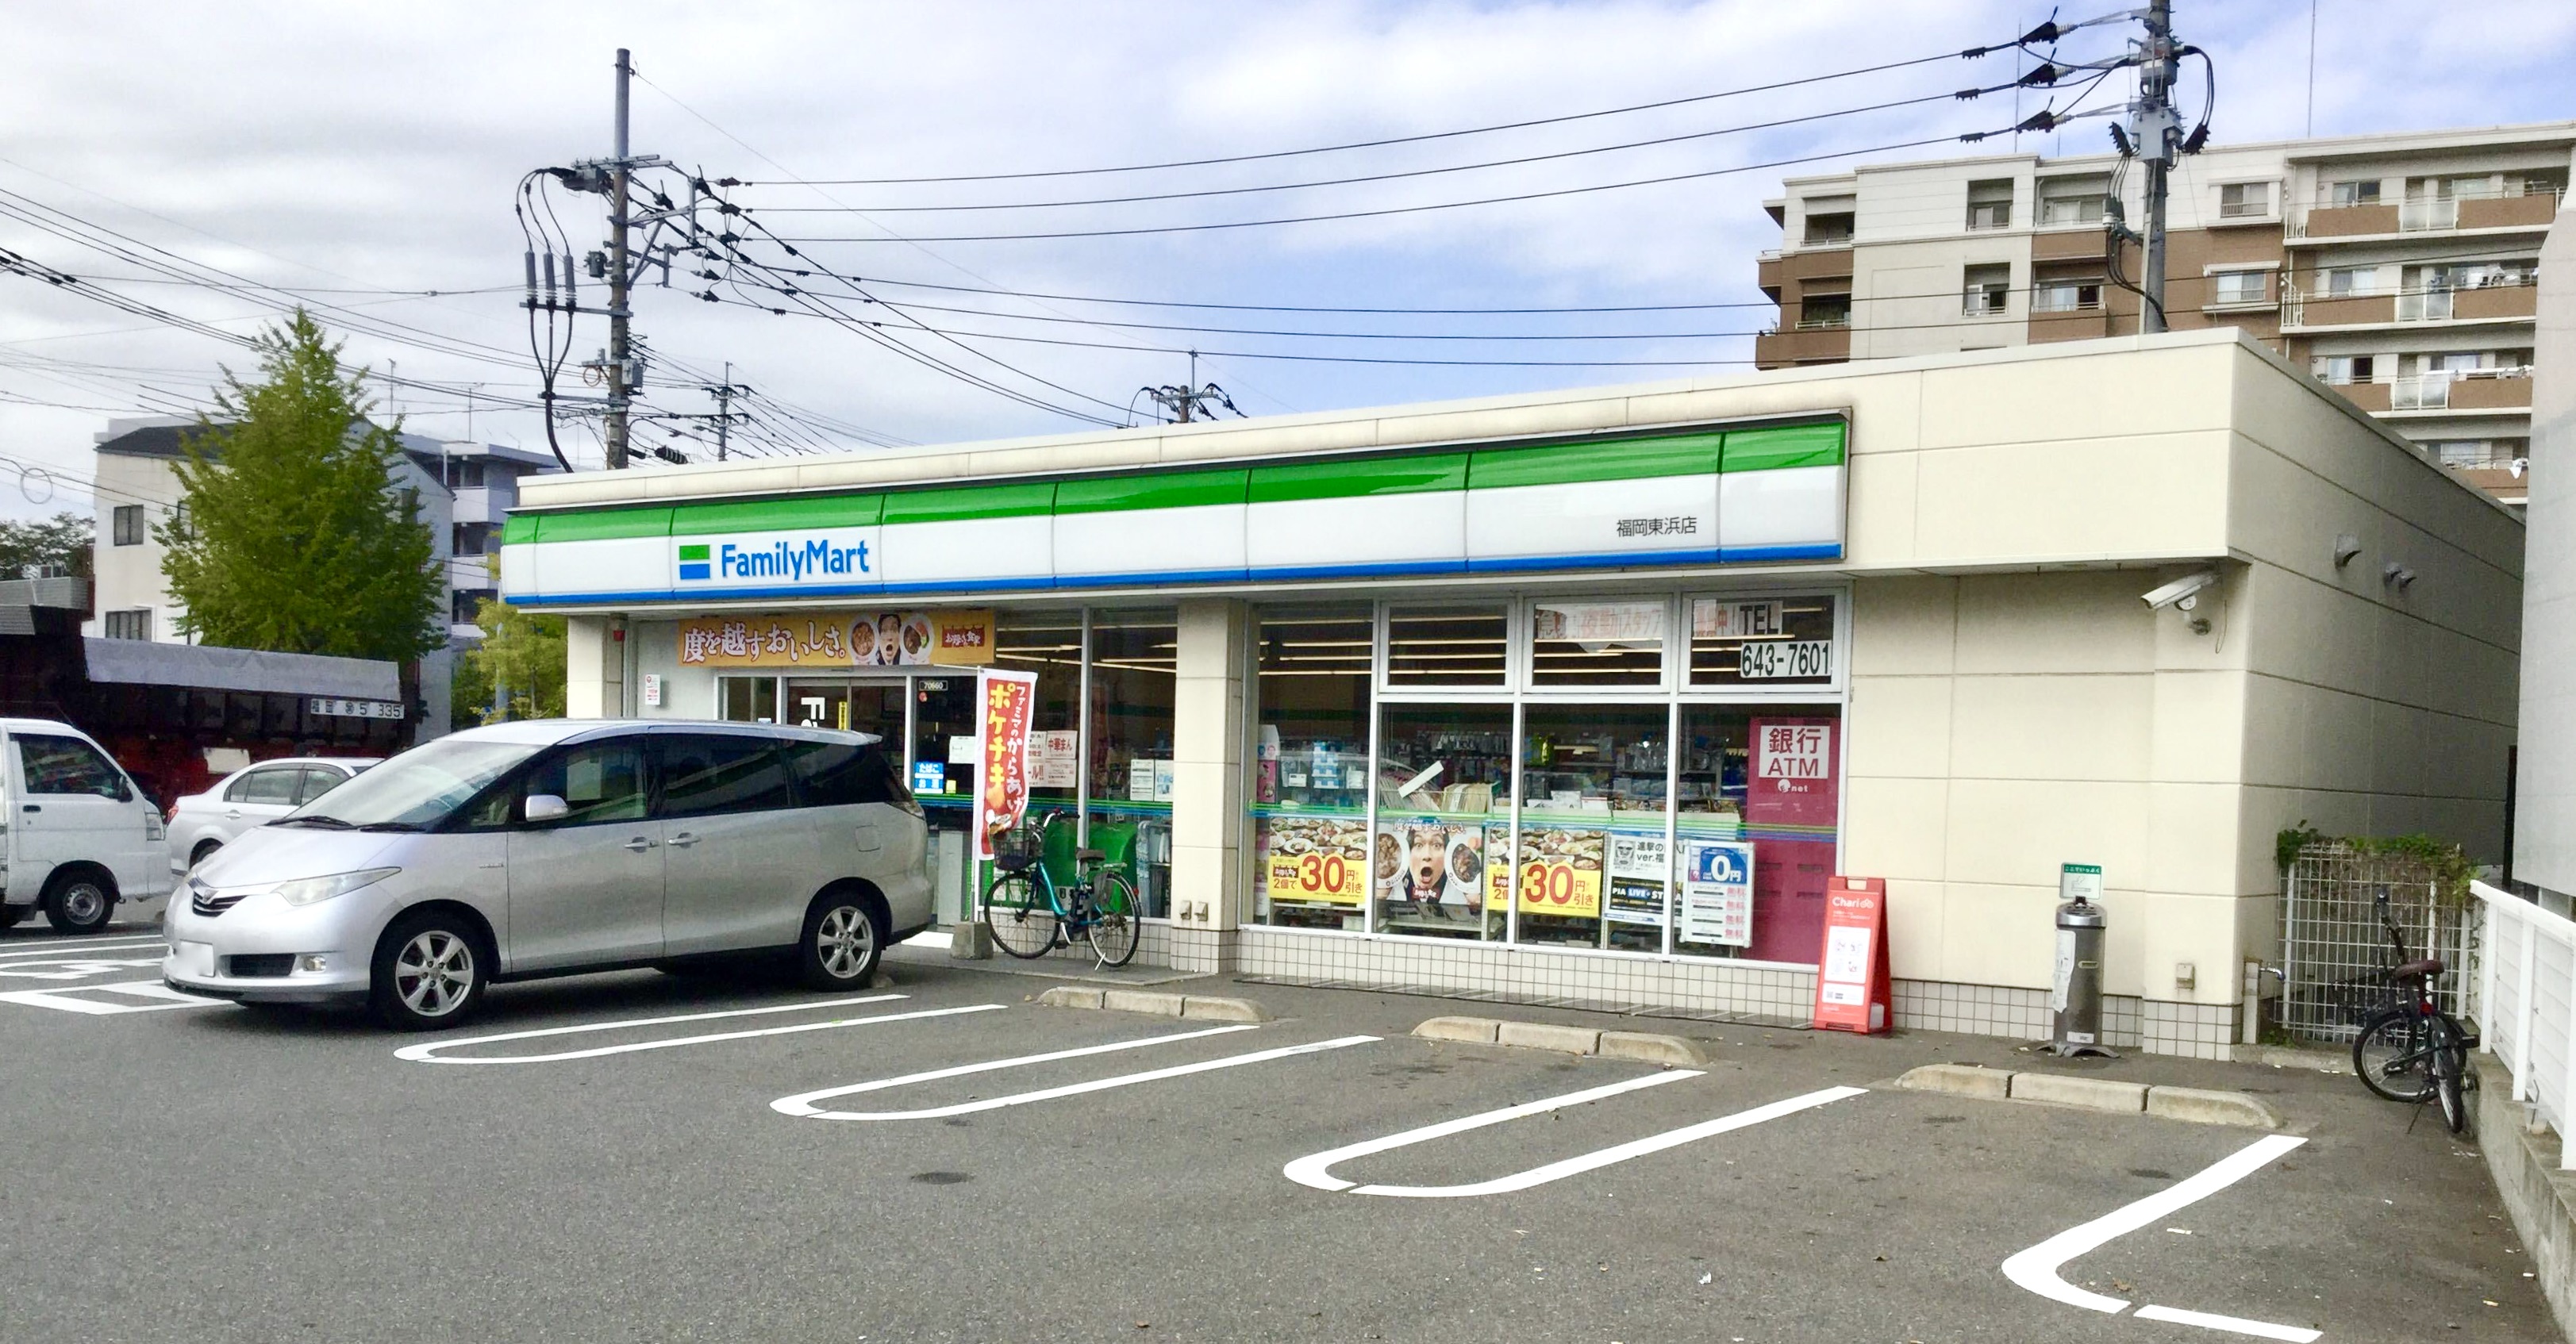 ファミリーマート福岡東浜店 Charichari(チャリチャリ) image